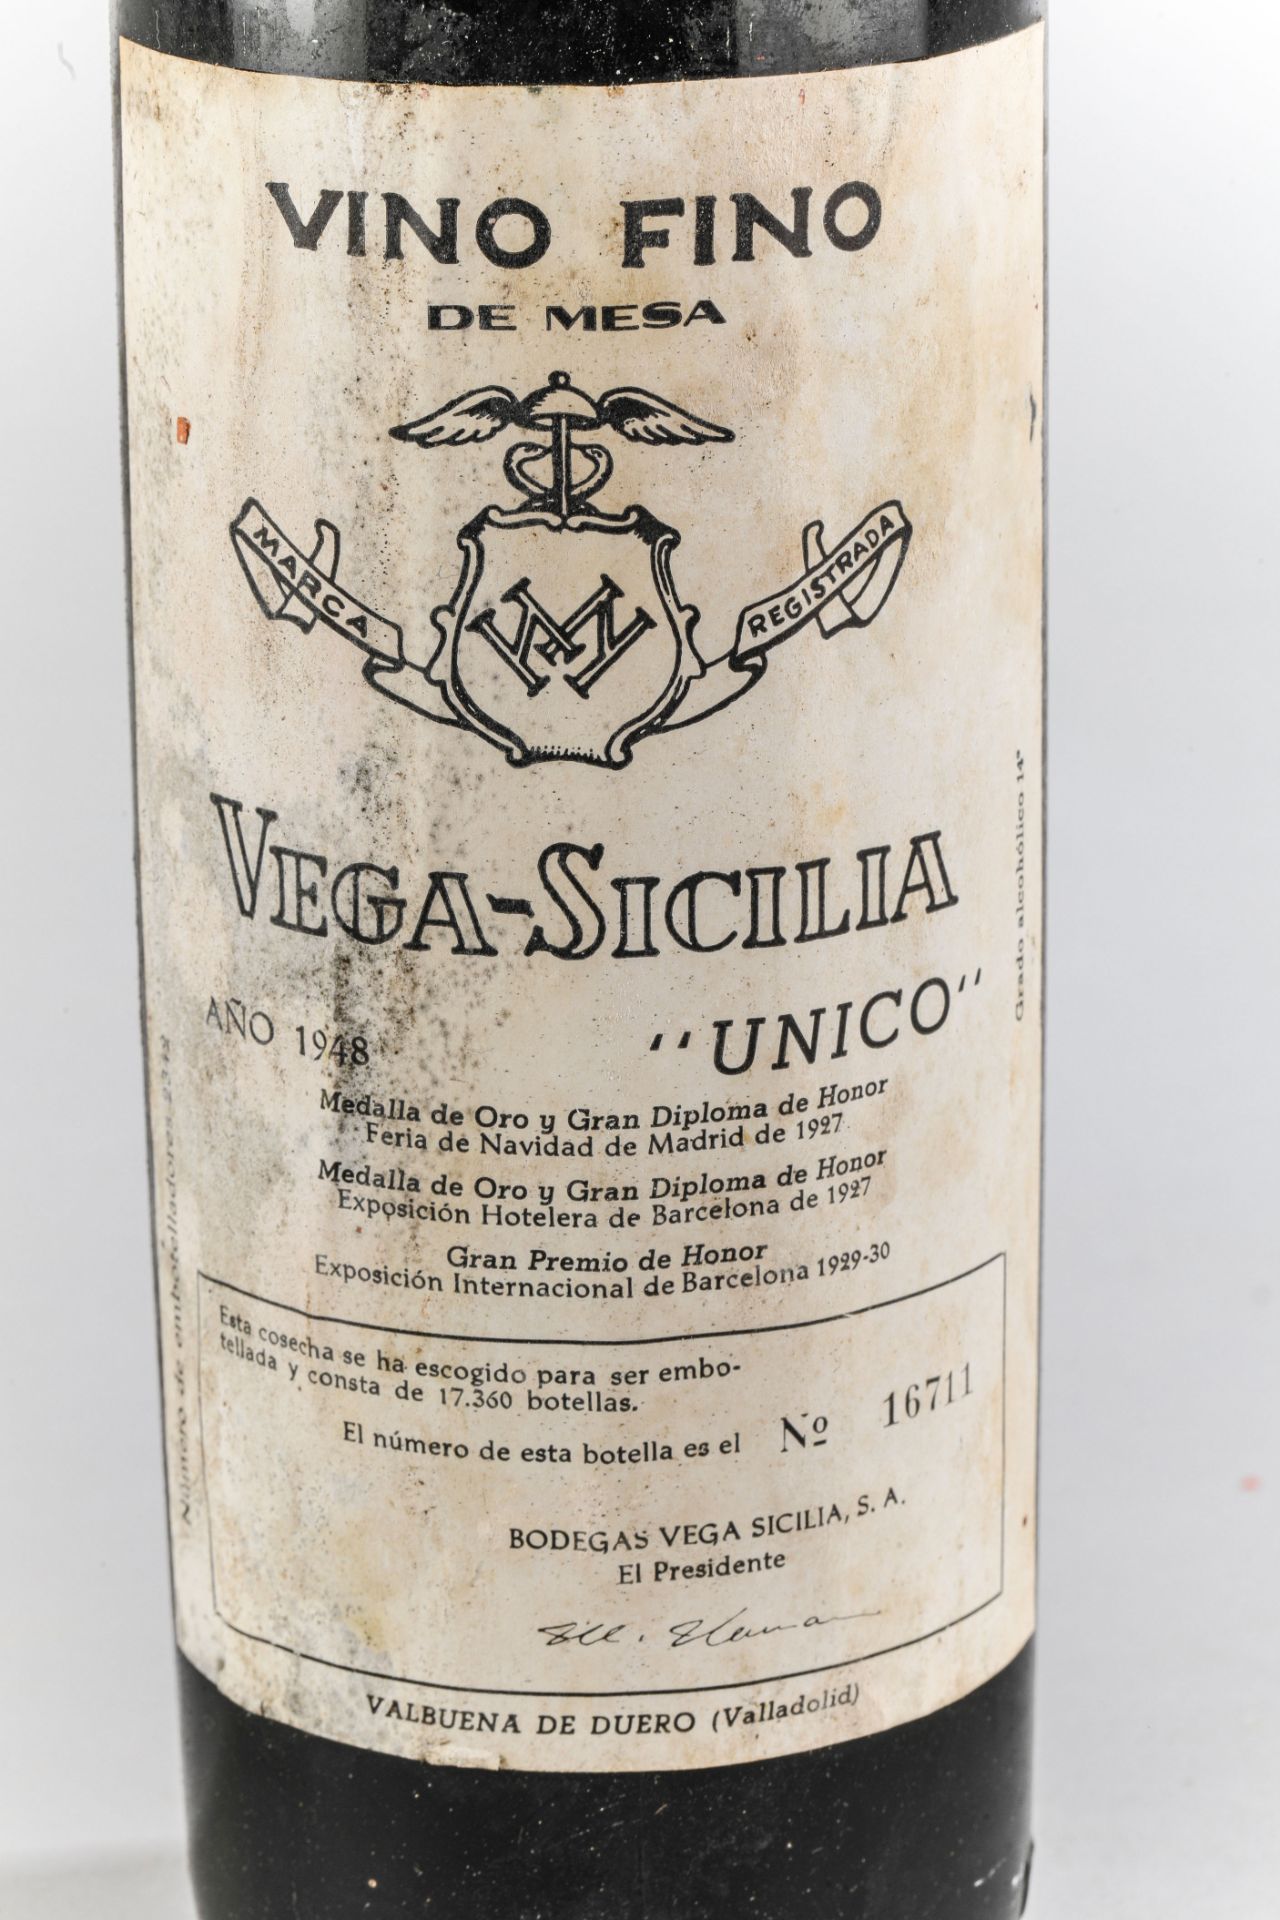 VEGA SICILIA UNICO.1948. Ribera del Duero. Bouteille N°16711 sur production de 17360 bouteilles. - Image 2 of 4